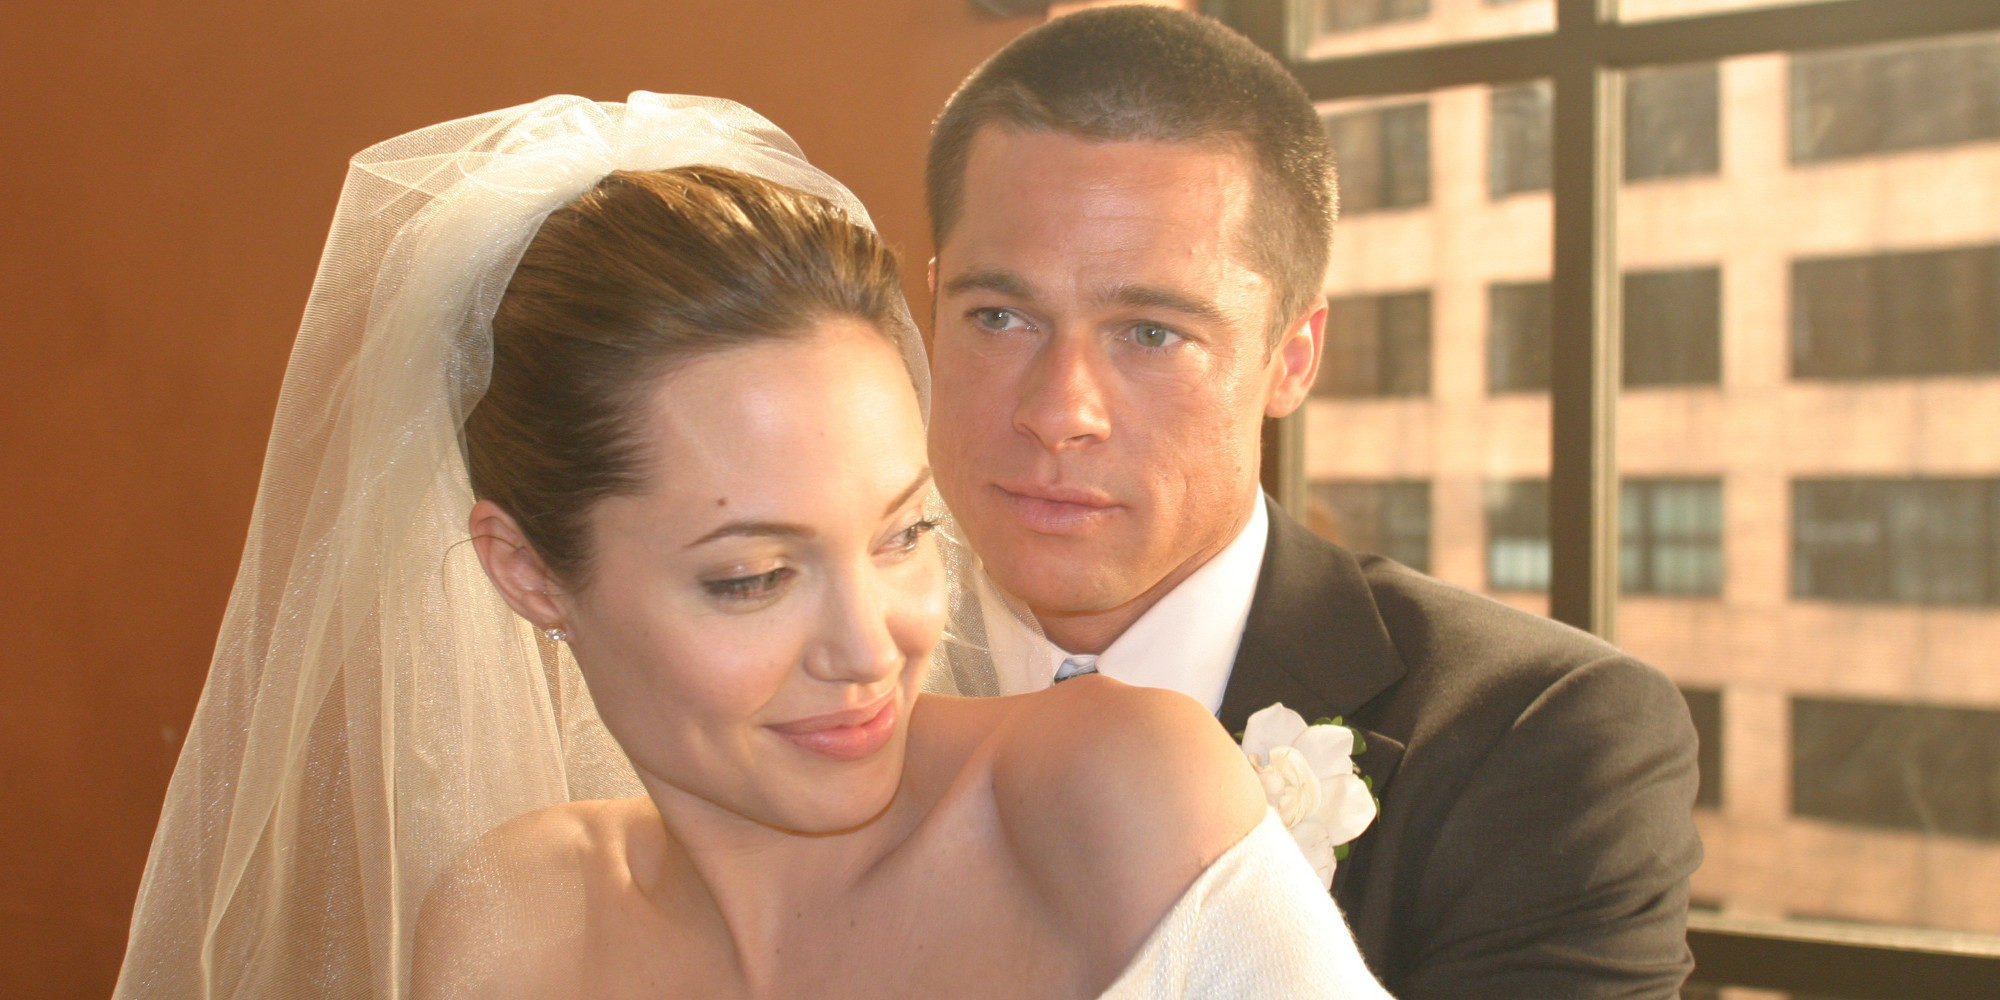 Brad Pitt y Angelina Jolie un año después del divorcio que traumatizó al mundo